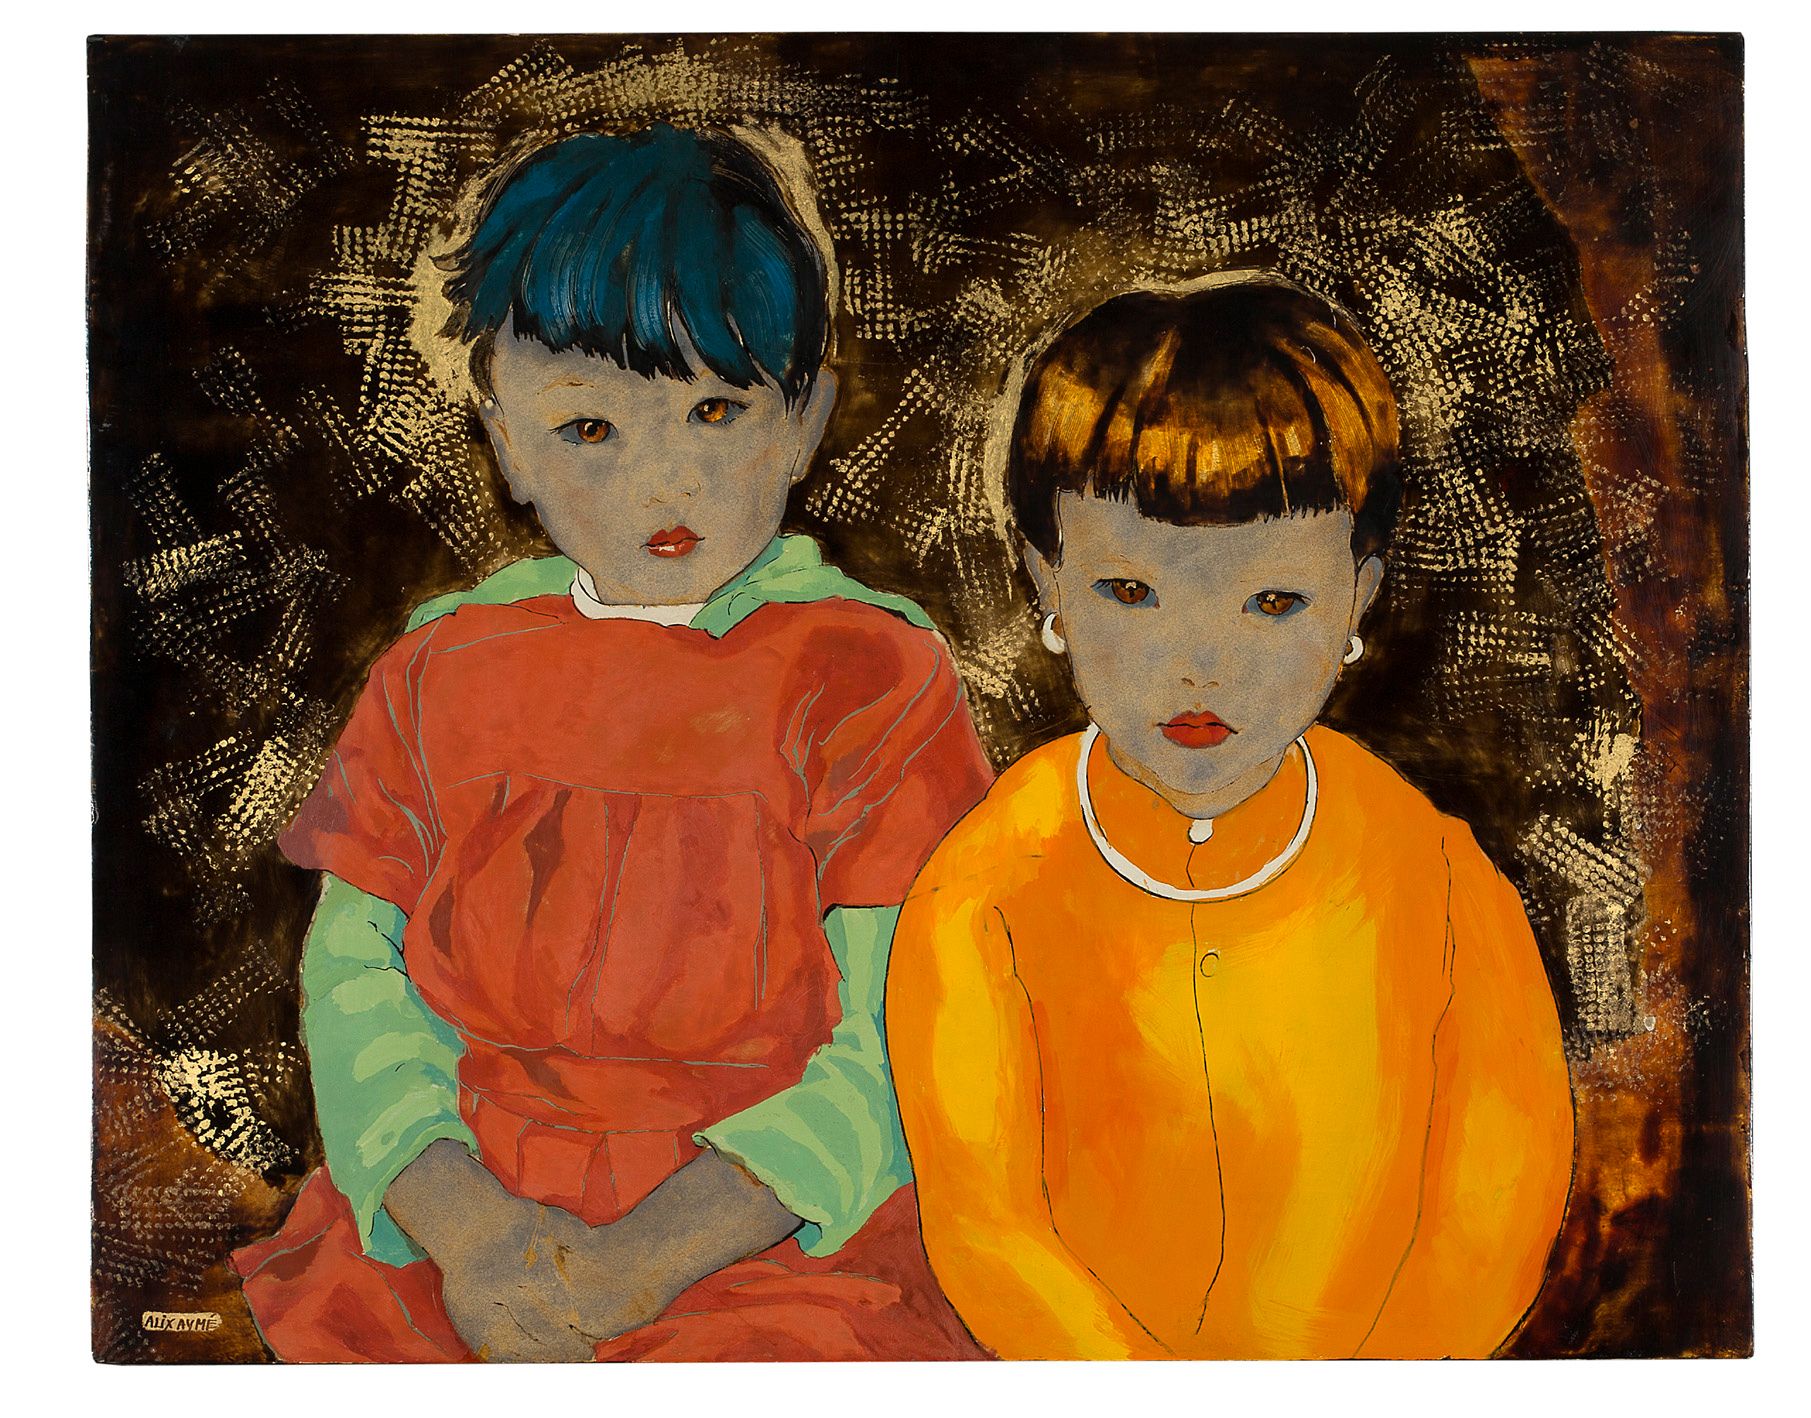 ALIX AYMÉ (1894-1989) Les deux enfants annamites, circa 1970
Lacquer with gold a&hellip;